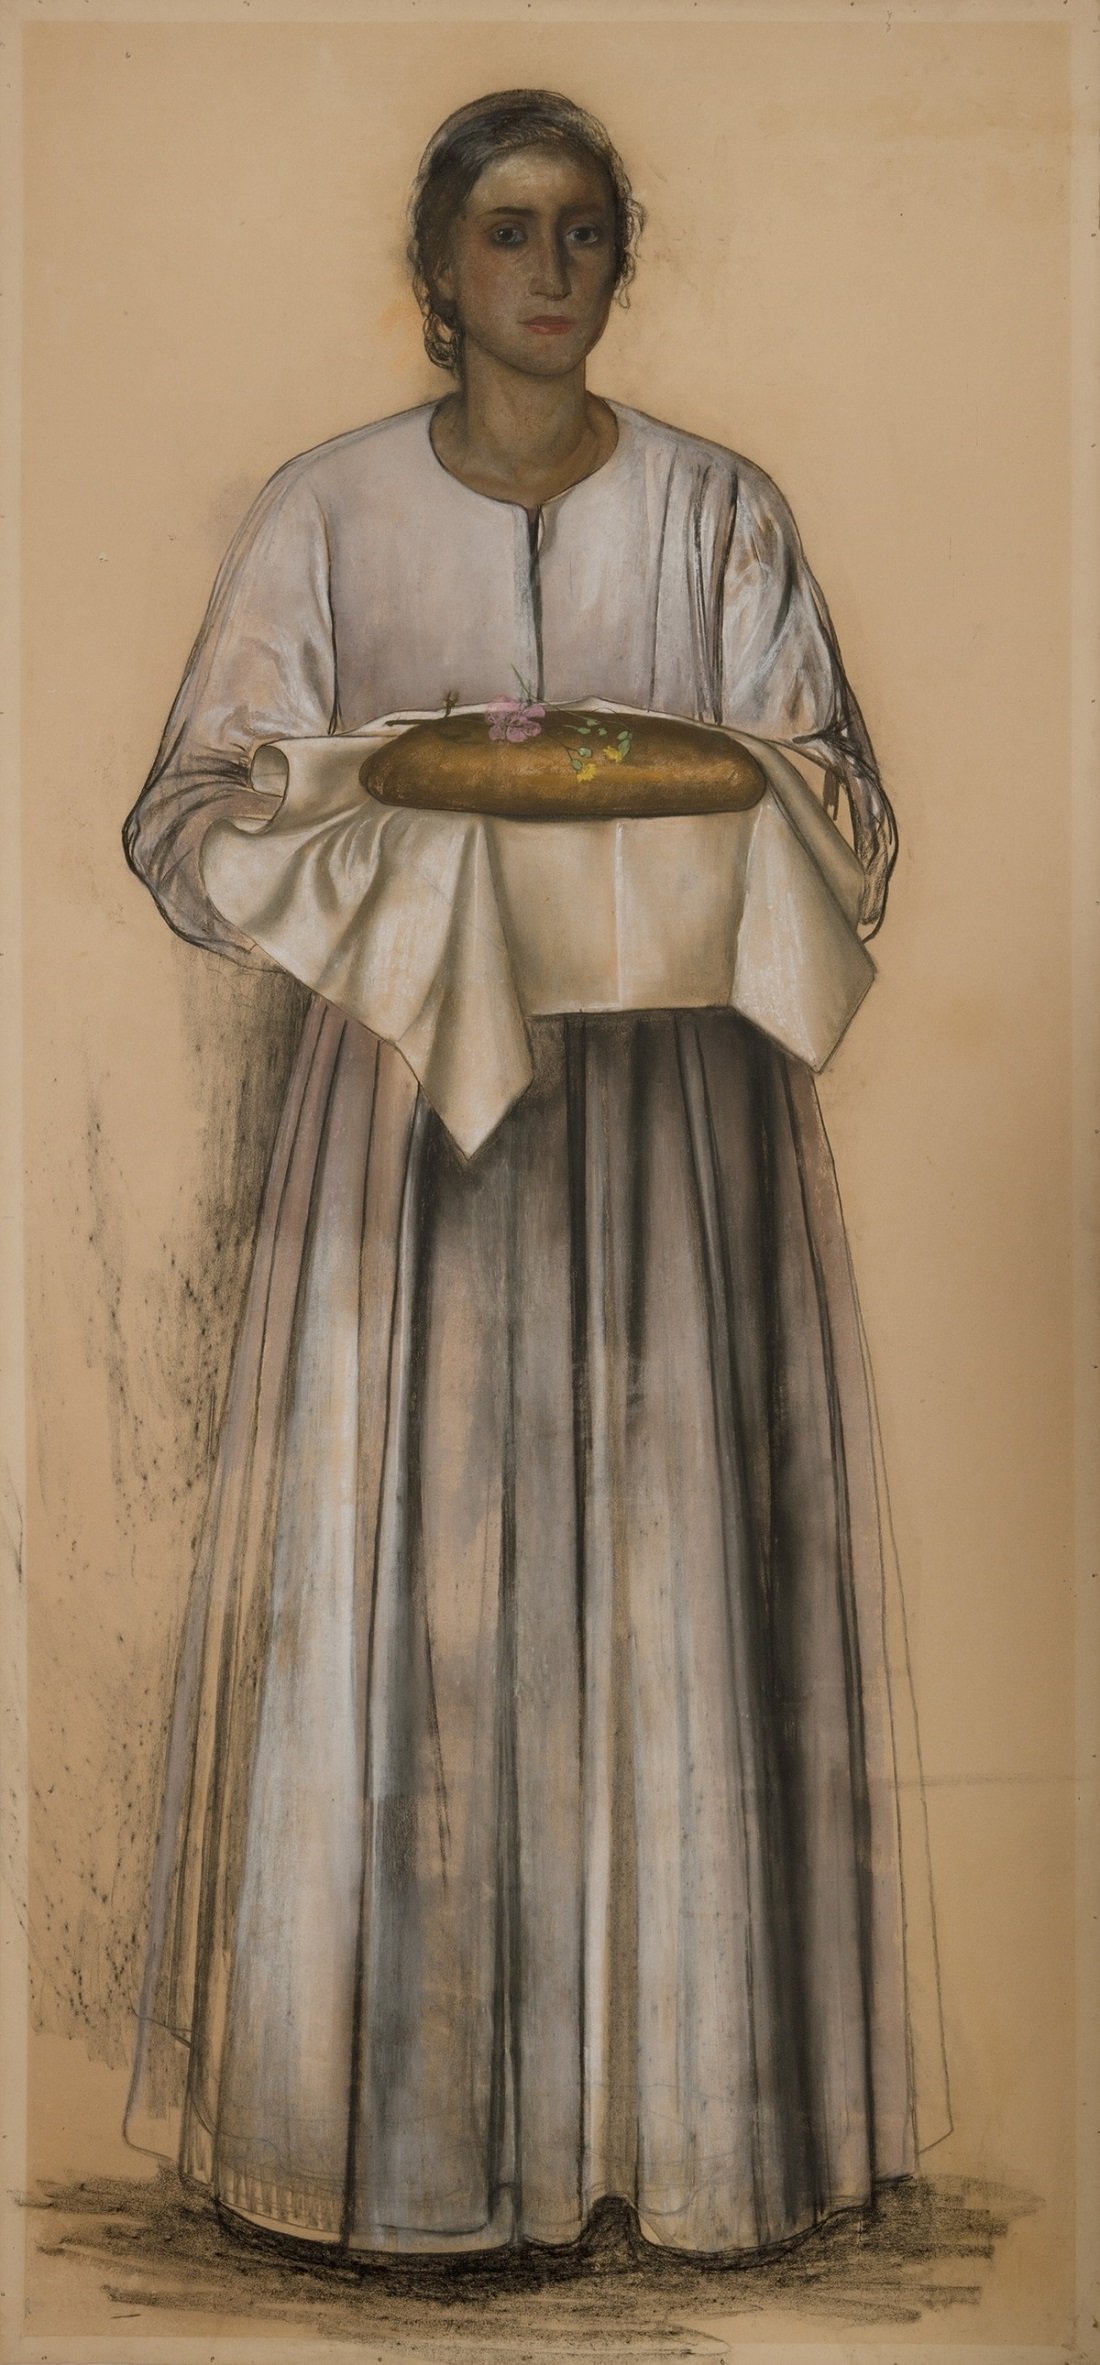 Pietro Gaudenzi, Donna con pagnotta infiorata, 1938, carboncino e pastelli su carta, 200x90 cm. Courtesy Galleria del Laocoonte, Roma-Londra